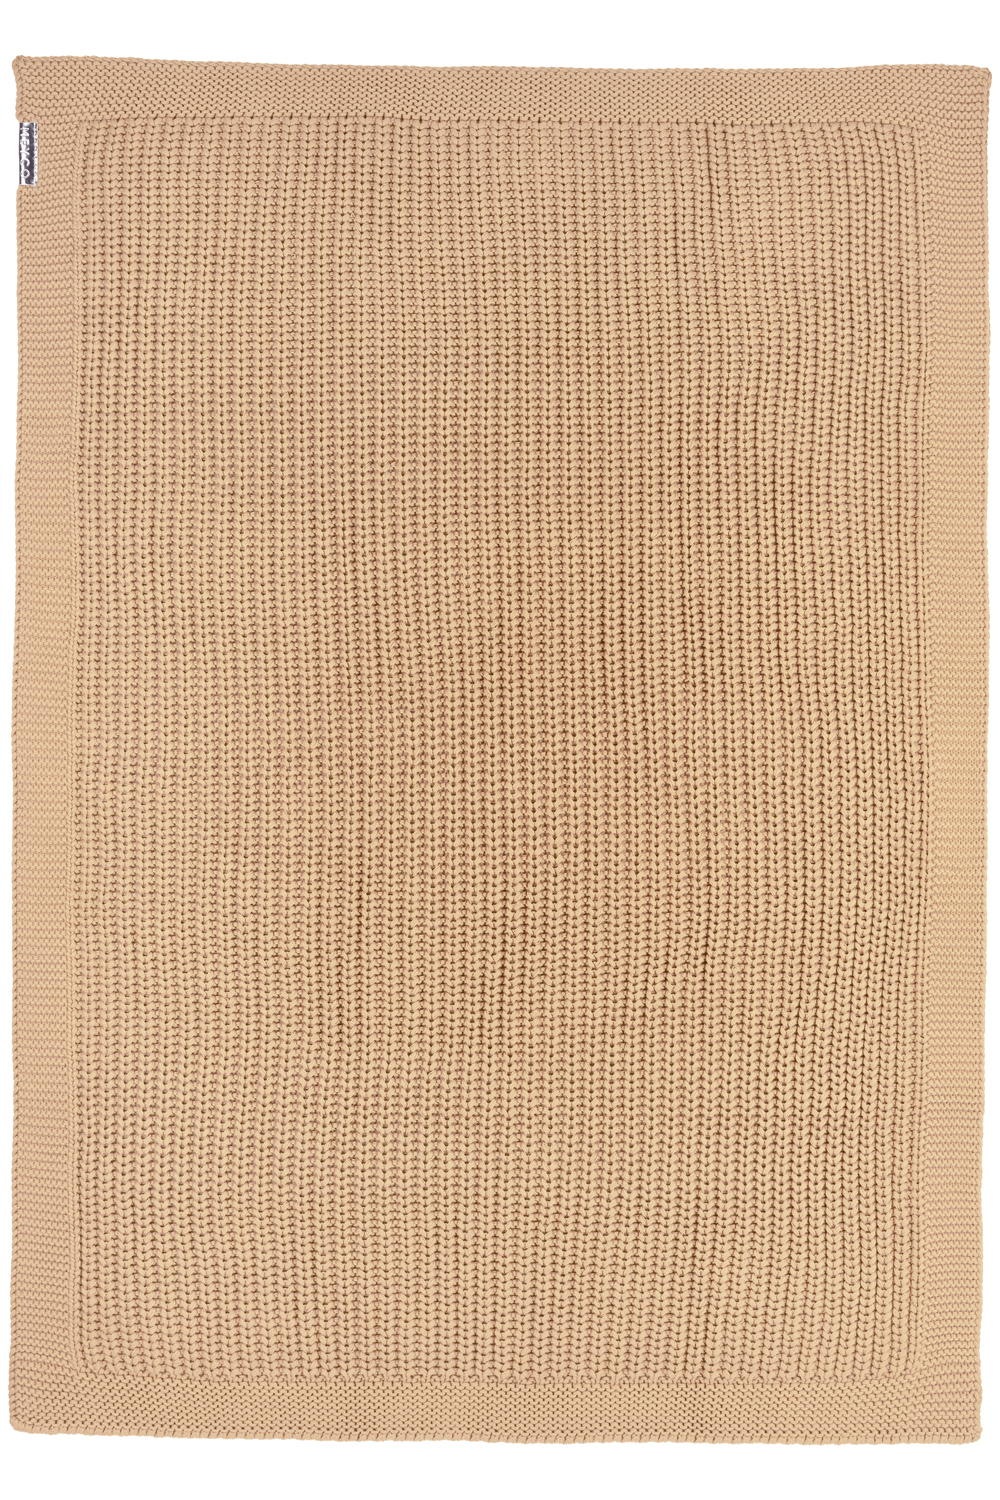 Wiegdeken Herringbone - warm sand - 75x100cm